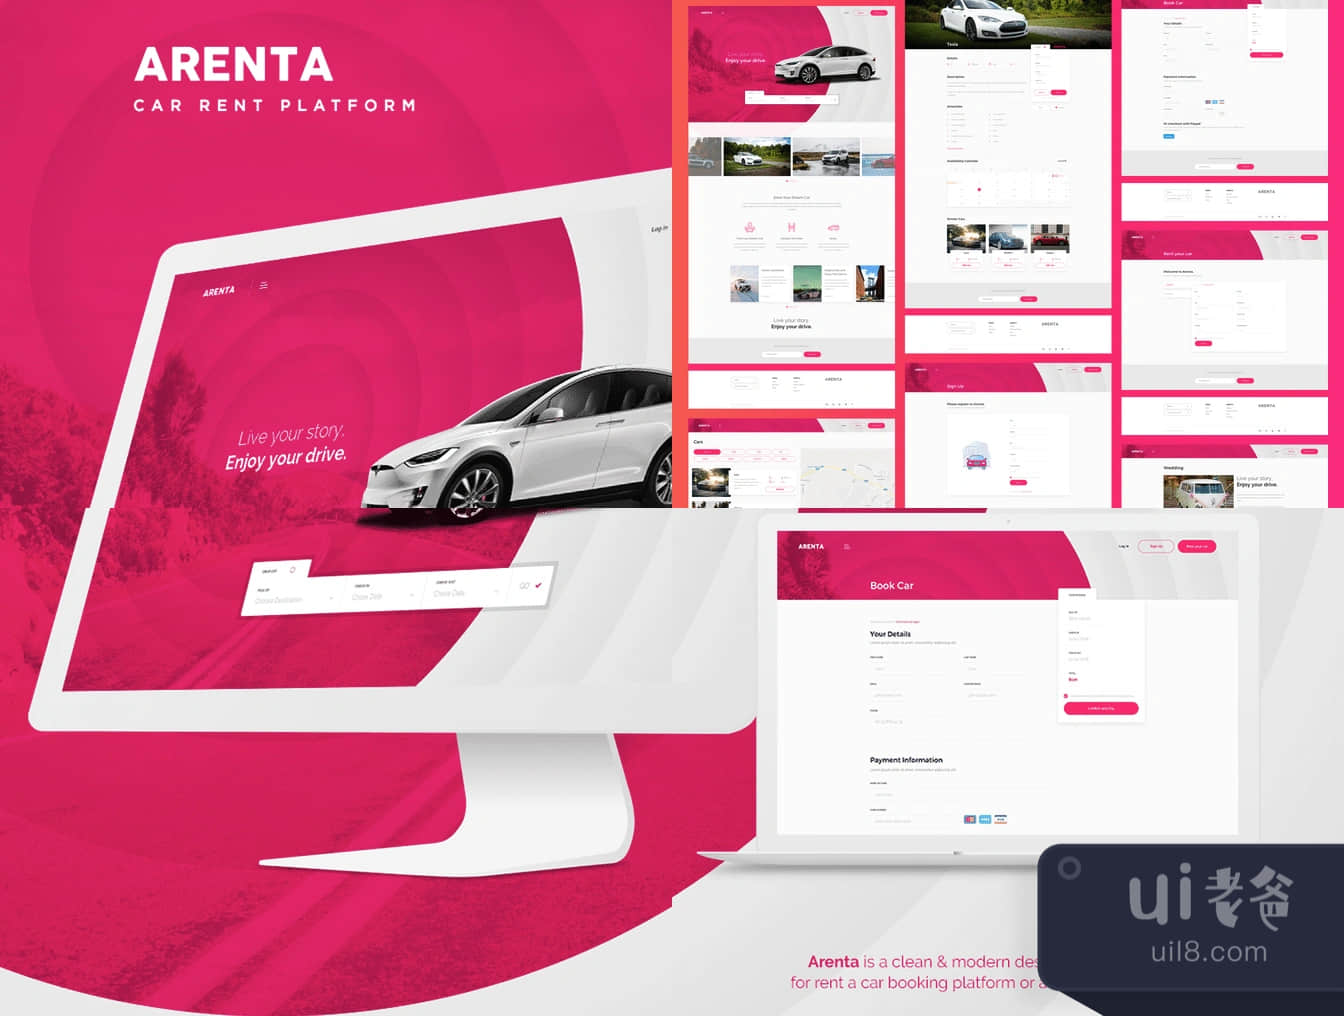 阿伦塔汽车租赁公司网页UI套件 (Arenta Car Rental Web UI Kit)插图1